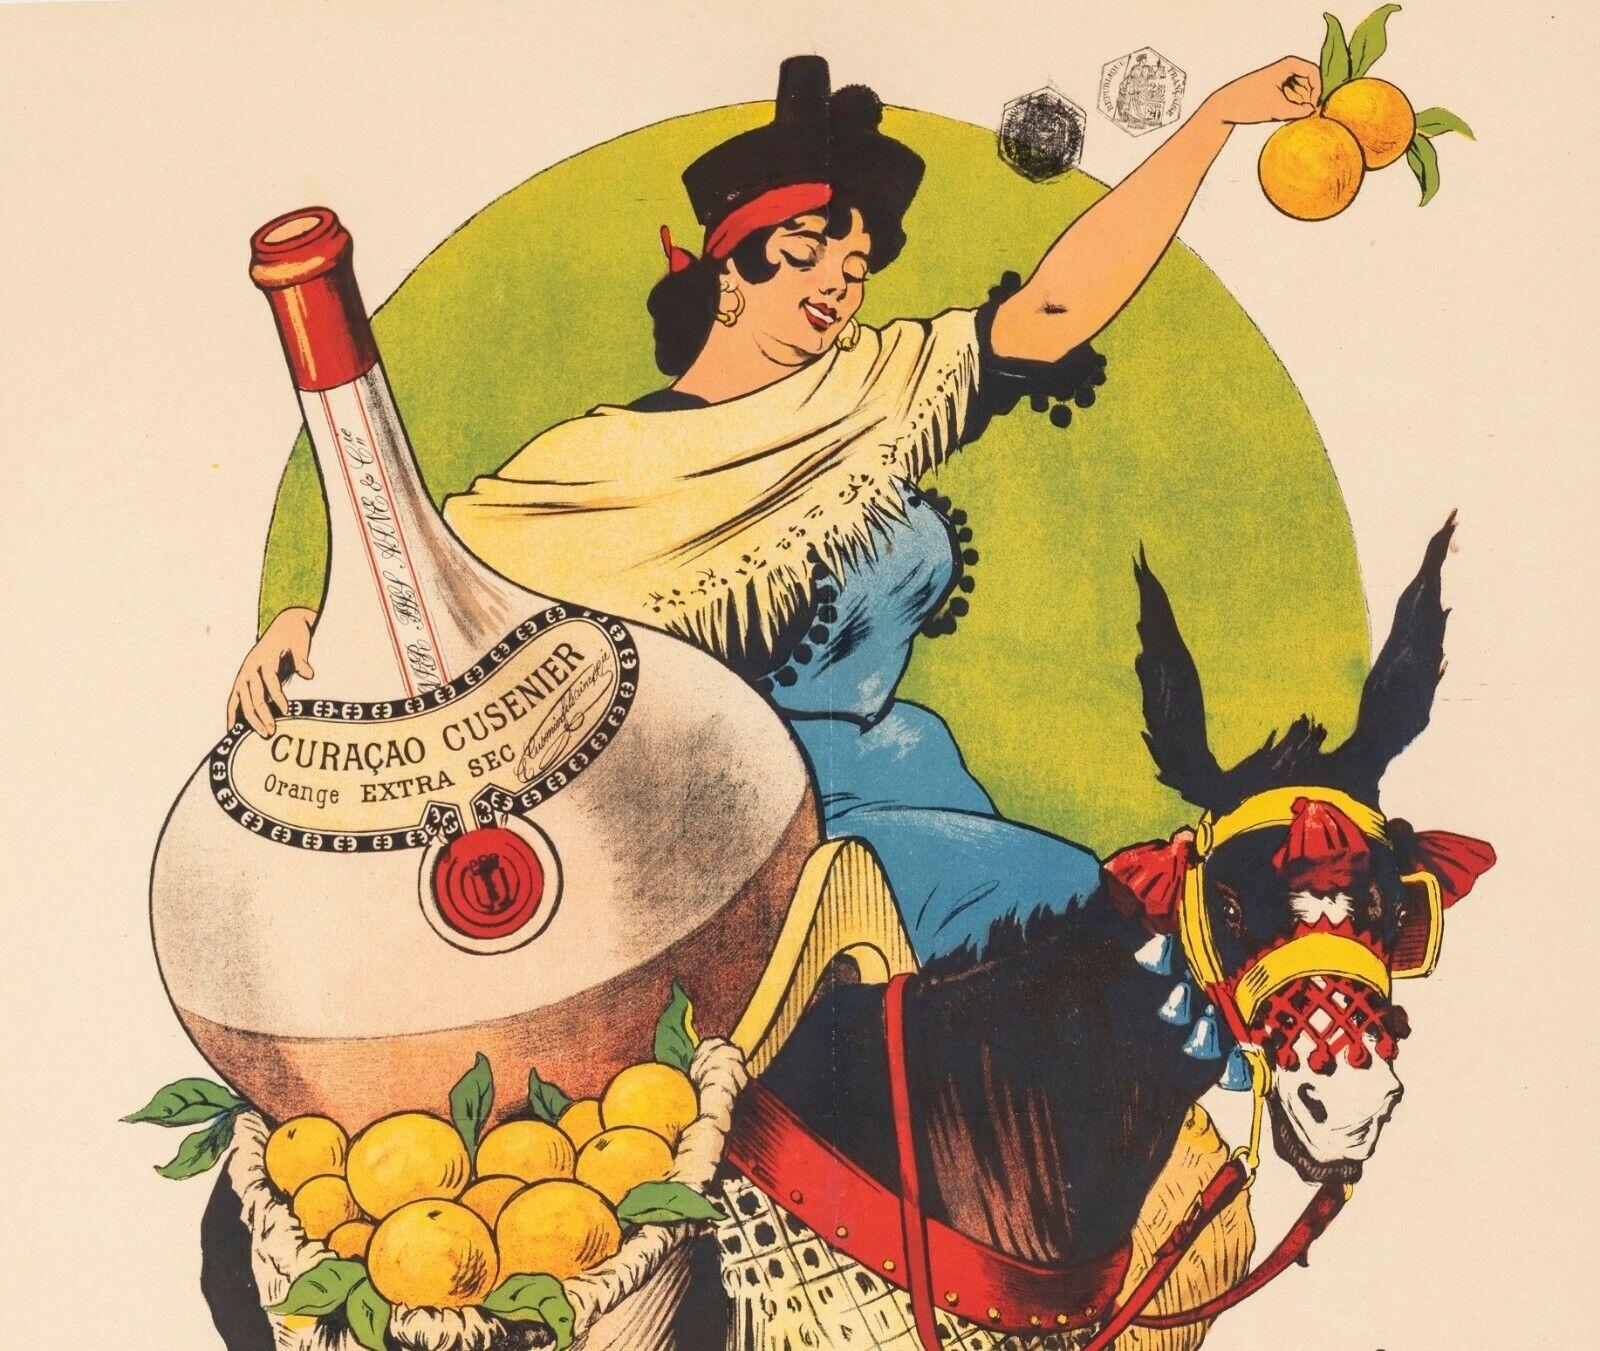 Original Vintage Poster-Gros E. -Curacao Cusenier-Liqueurs-Âne, 1899

Affiche pour la promotion de Curaçao Cusenier par l'artiste E. Gros.
Affiche lithographique en couleurs annonçant le Curaçao extra sec de Cusenier. L'affiche représente une femme